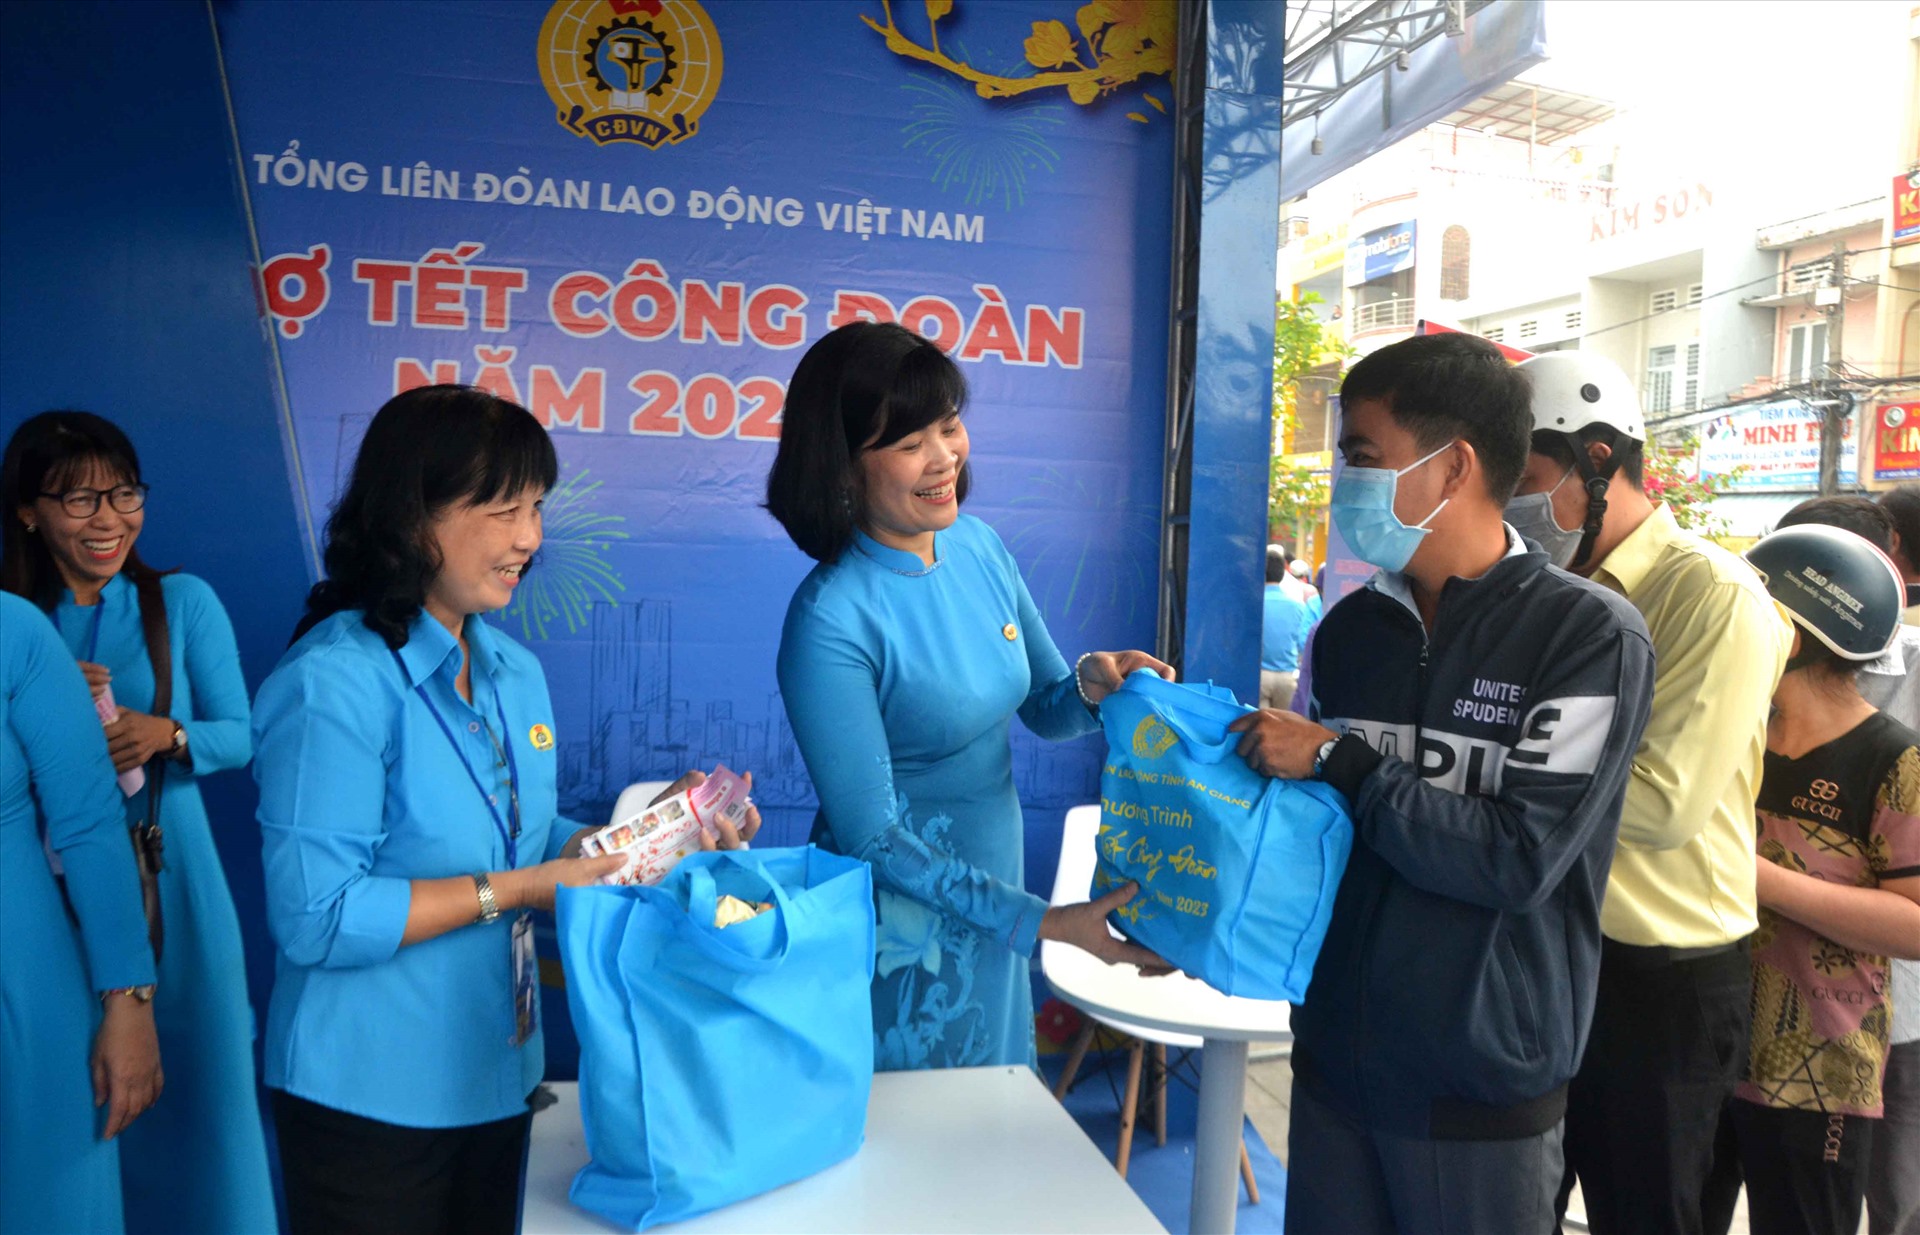 Lãnh đạo Tổng LĐLĐ Việt Nam tham gia tặng quà cho đoàn viên tại sự kiện Chợ Tết Công đoàn năm 2023. Ảnh: Lâm Điền